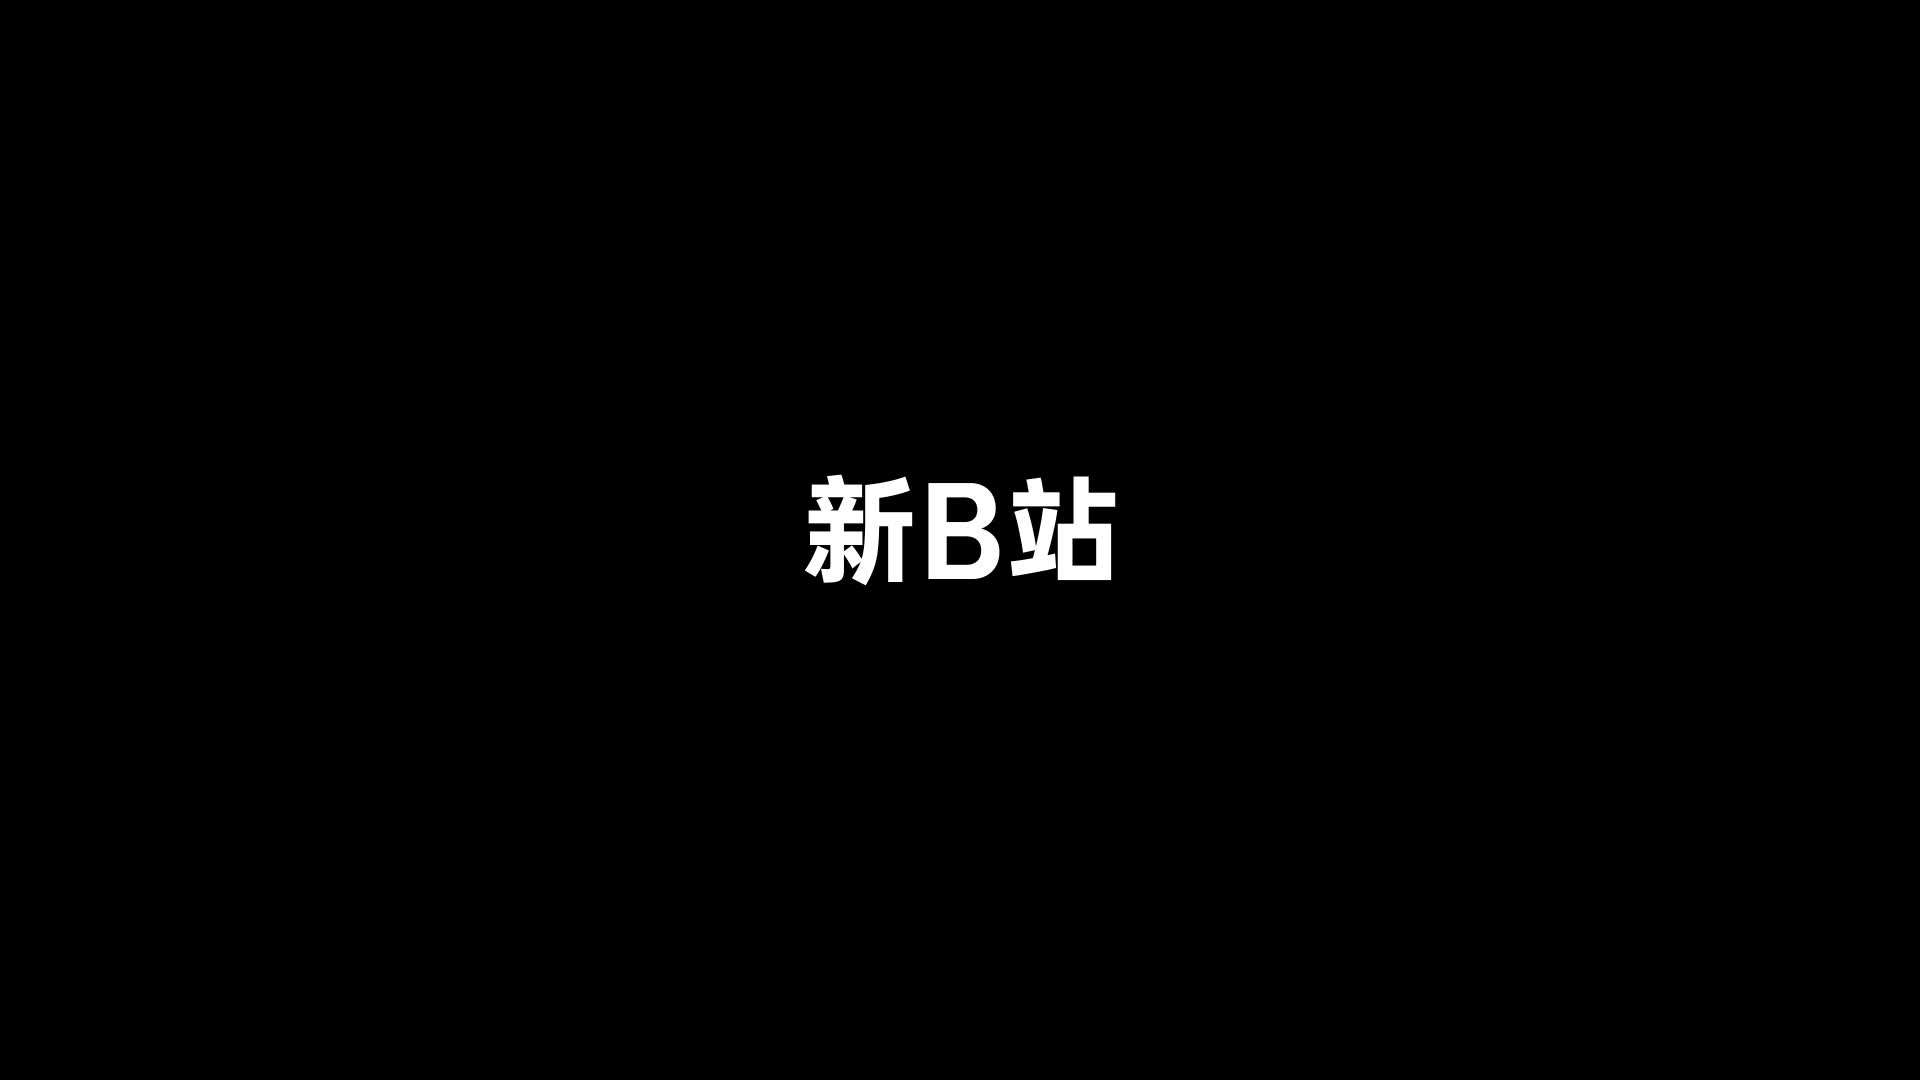 【苹果风】新B站 宣传片 动画